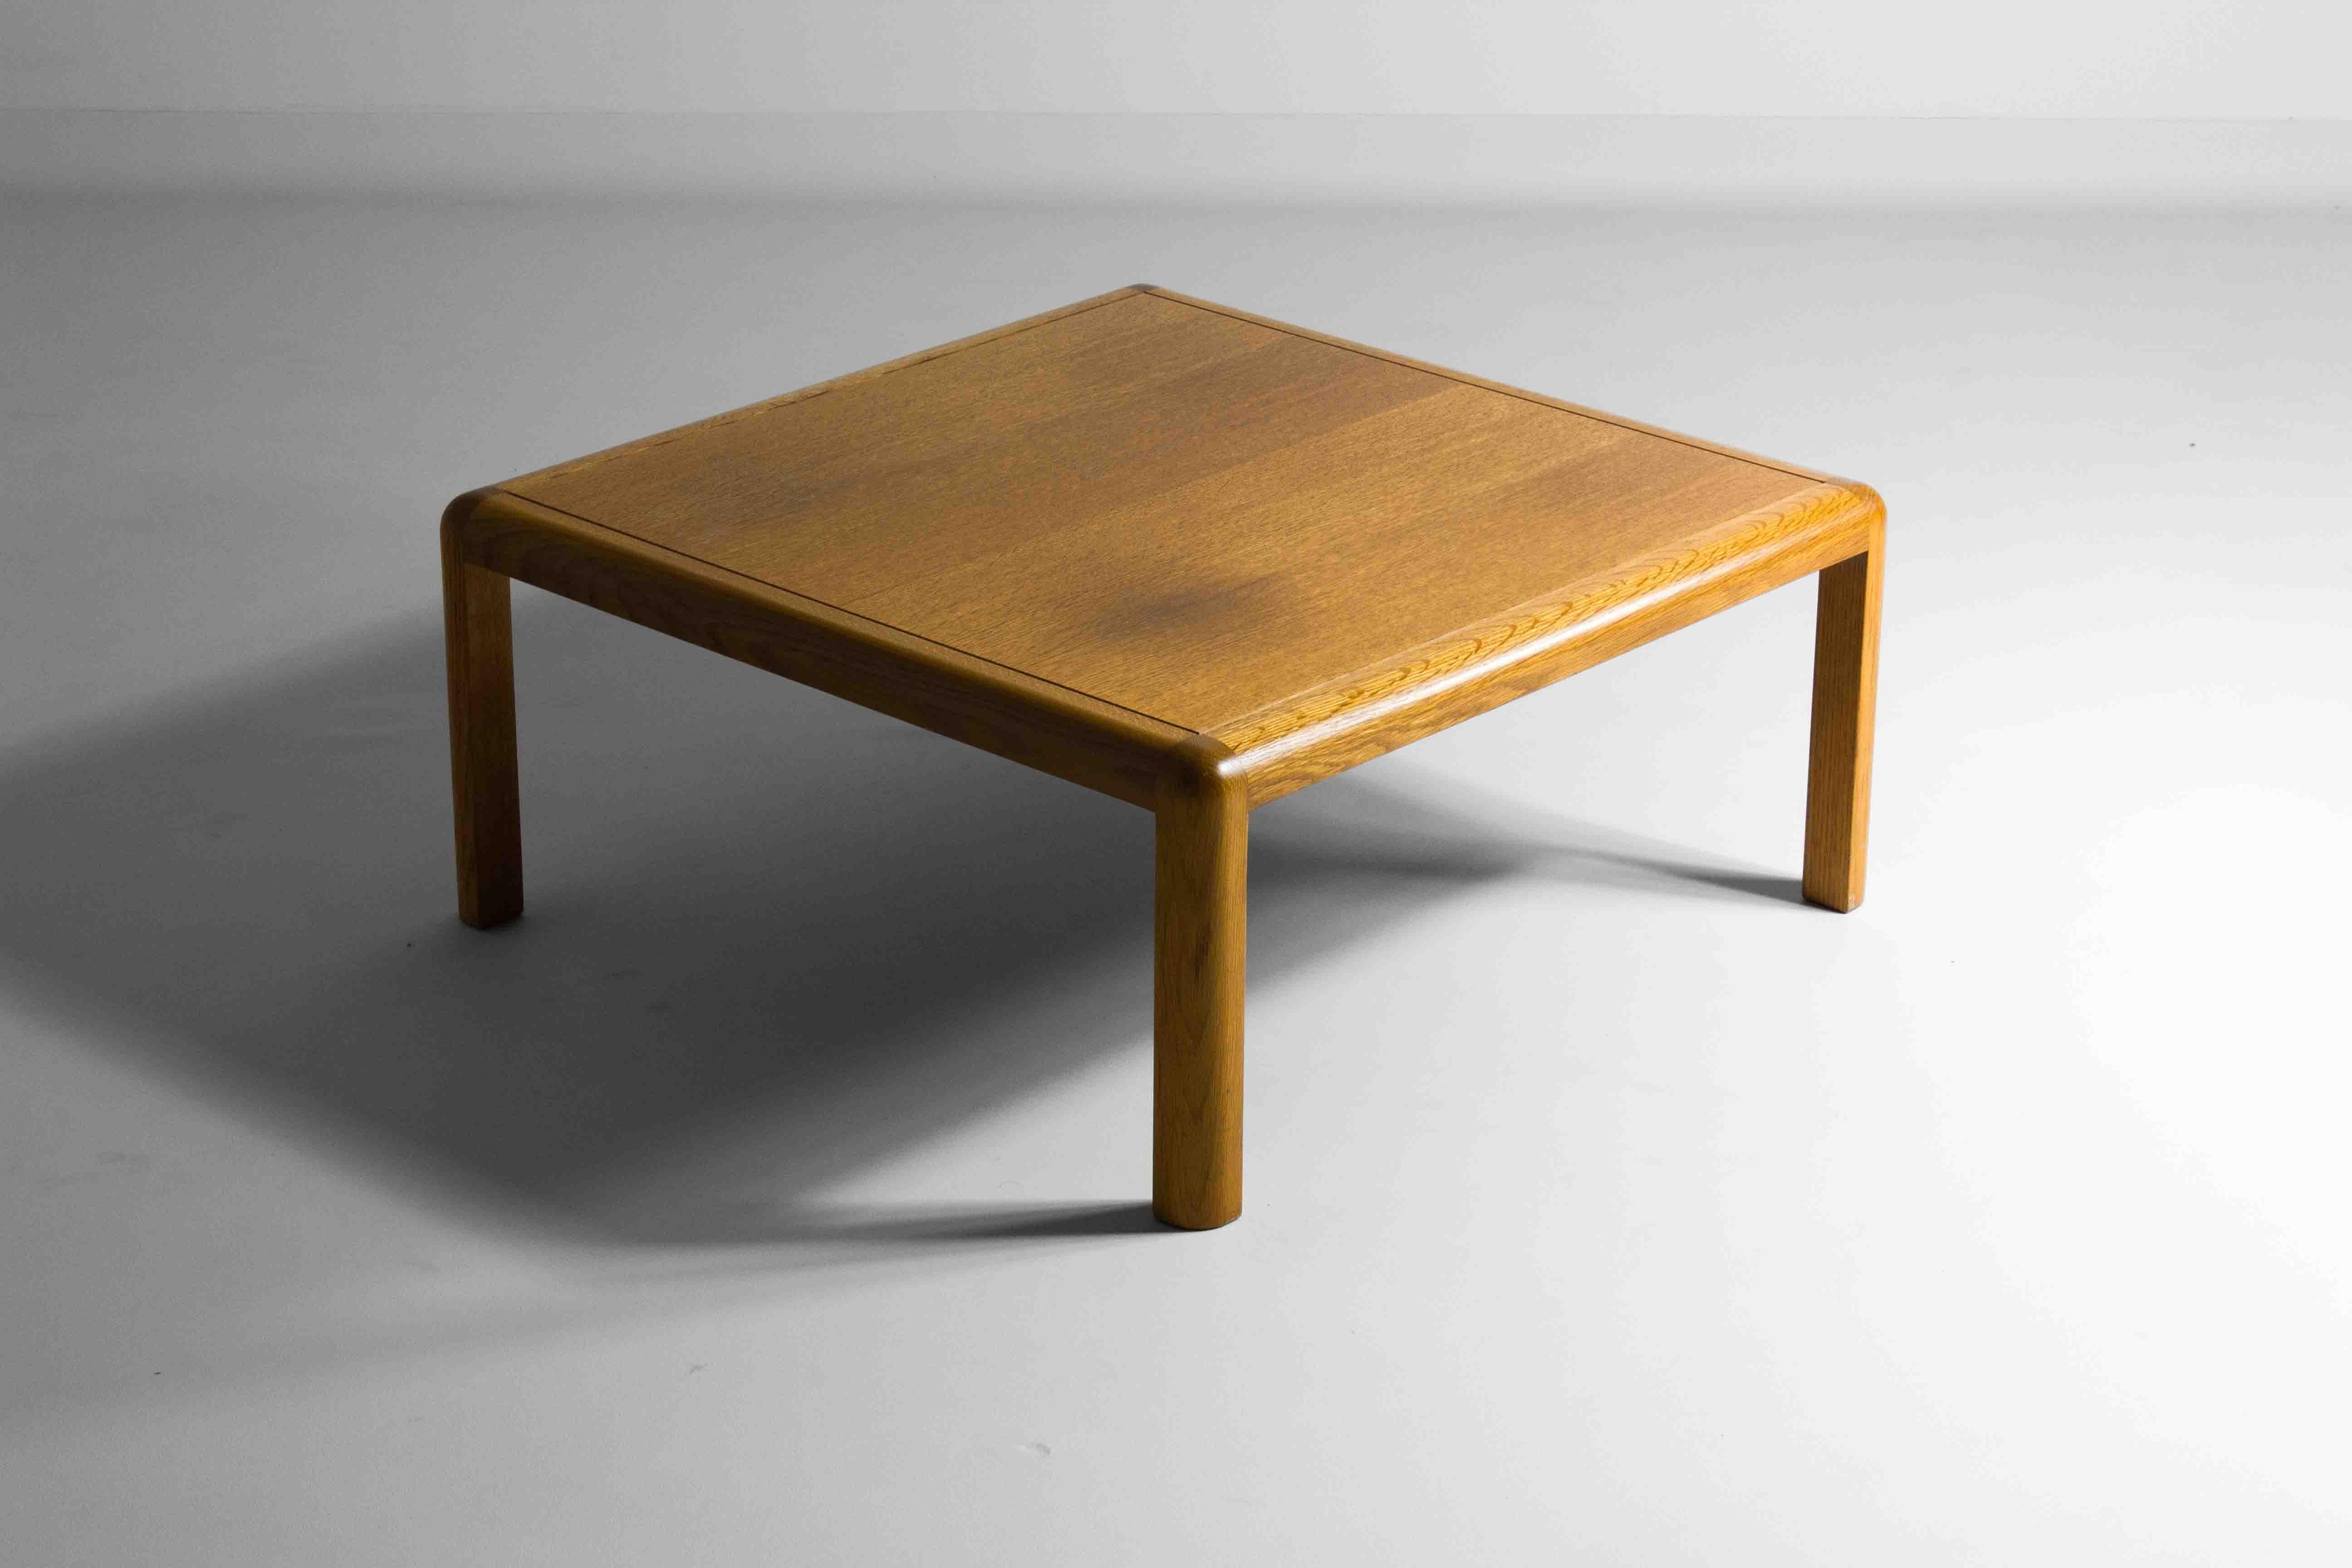 Dieser minimalistische quadratische Couchtisch mit abgerundeten Ecken wurde von Van den Berghe - Pauvers in den 1970er Jahren in Belgien hergestellt. Die warme, hochwertige Eiche passt sehr gut zu den schlichten Formen des Tisches.